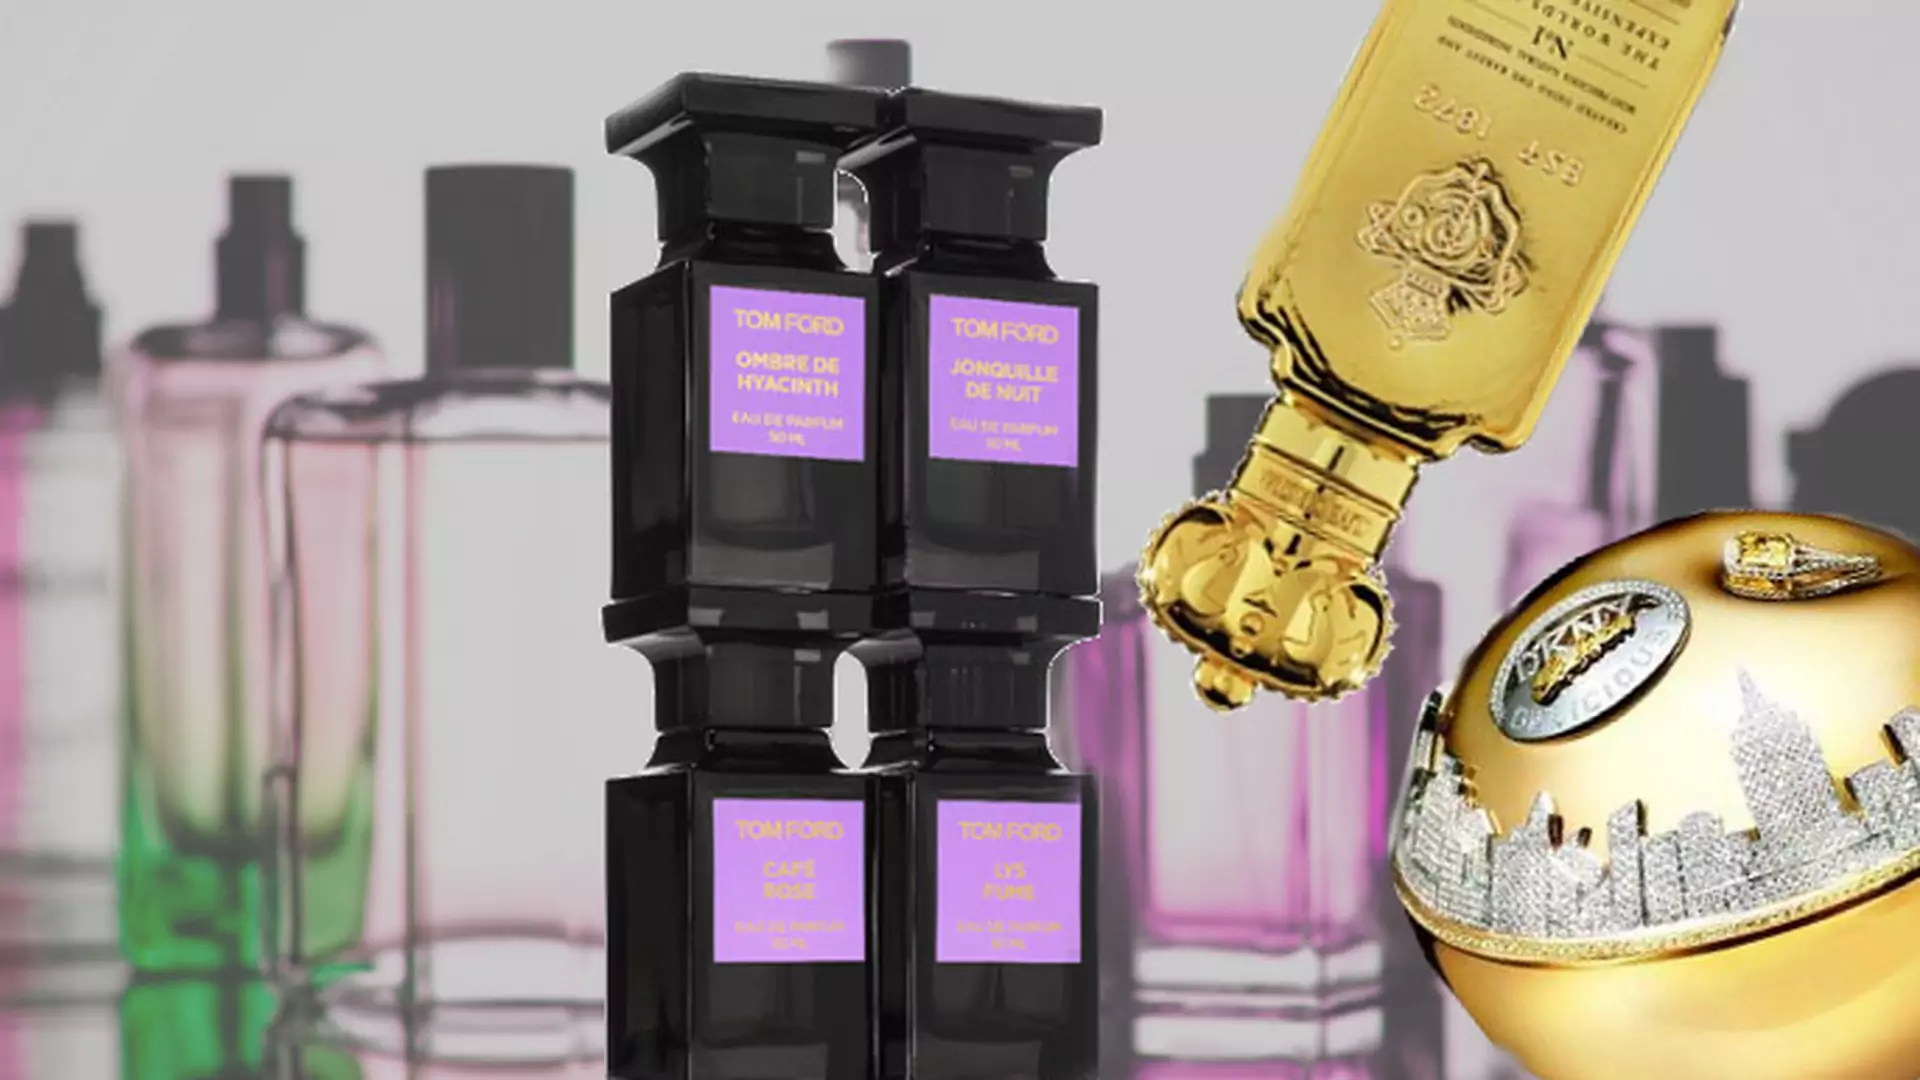 Perfumy za milion dolarów? Namierzamy najdroższe zapachy świata!